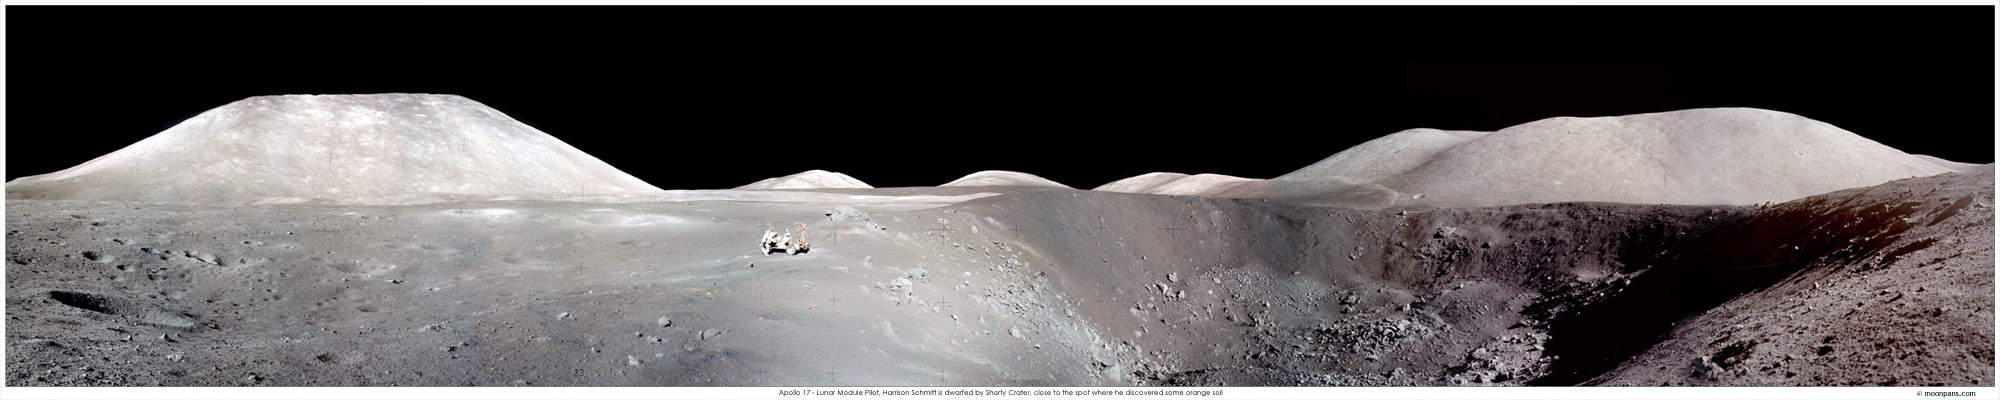 Apollo 17 Shorty Crater